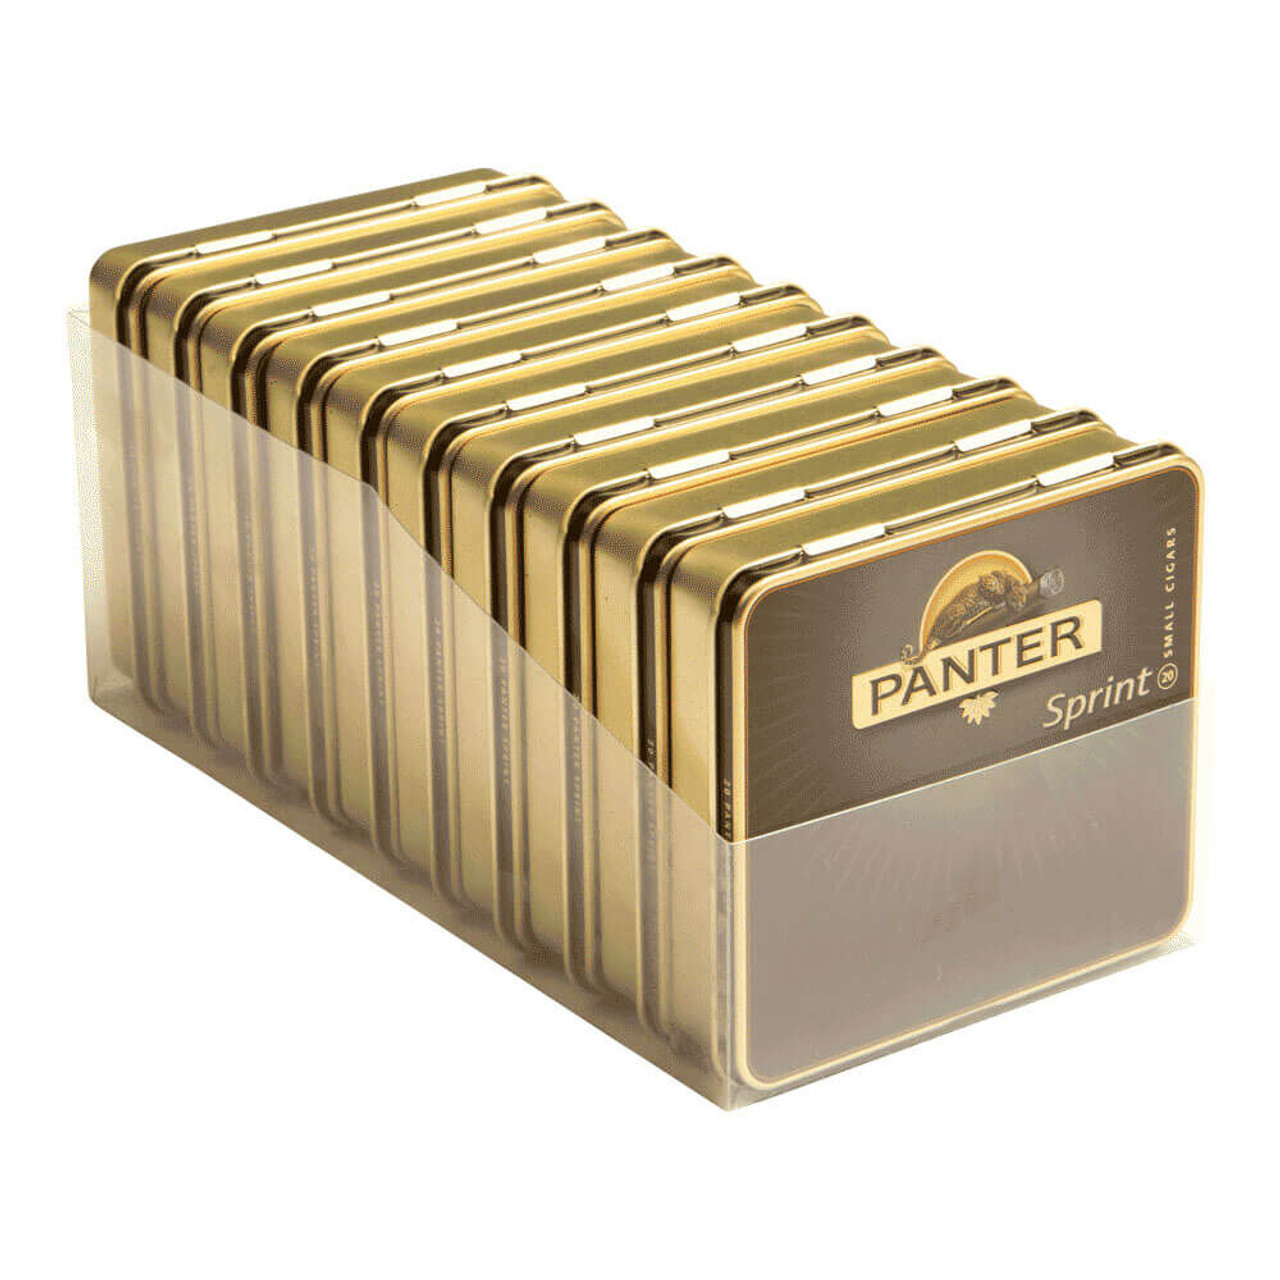 Panter Sprint Cigars - 3 x 21 (10 Tins of 20) (200 Total)